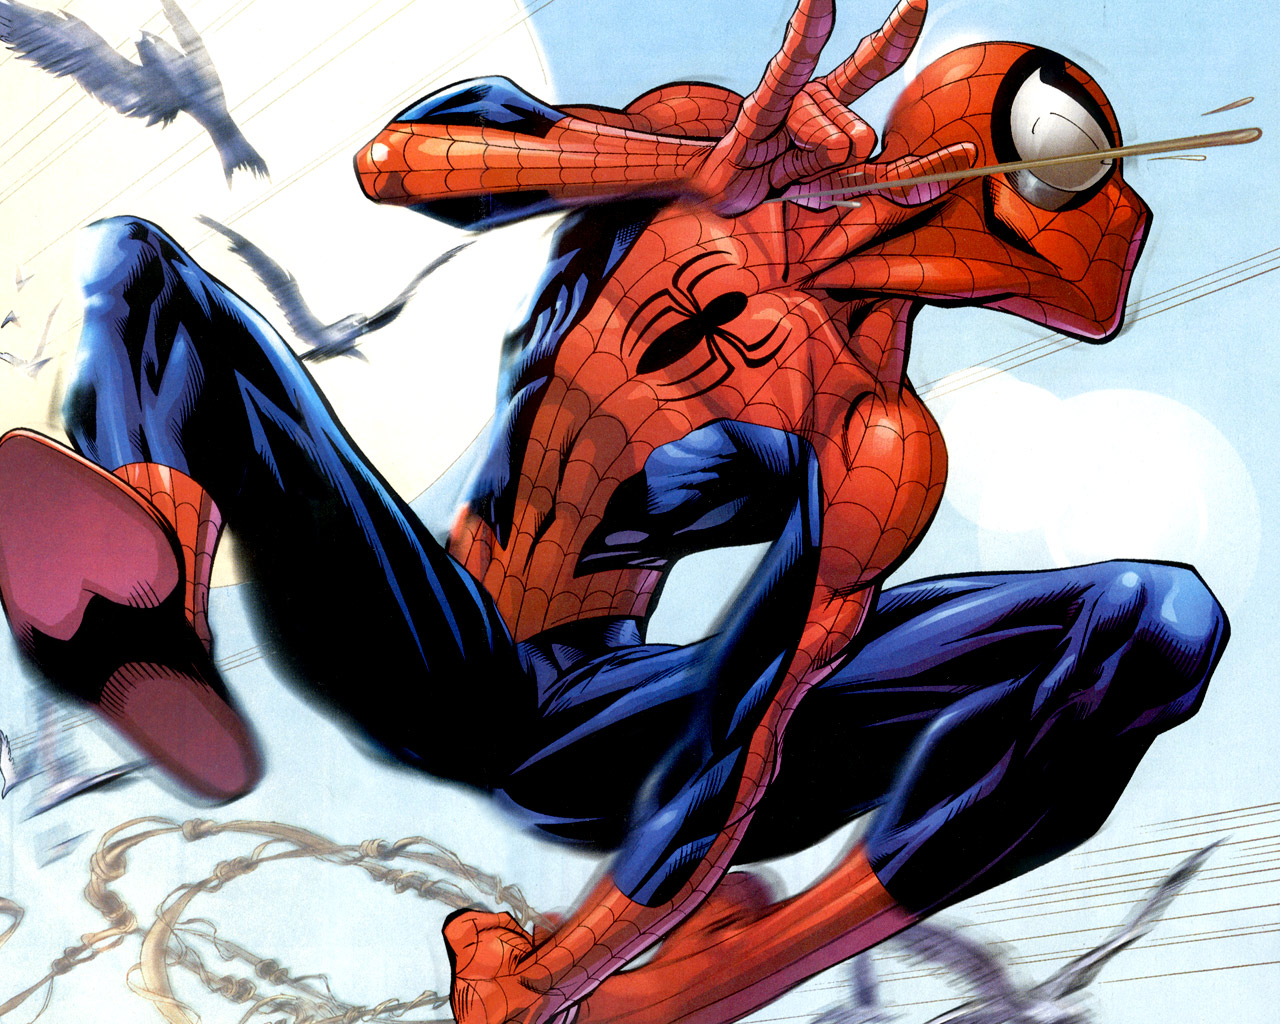 fond d'écran de dessin animé spiderman,personnage fictif,homme araignée,dessin animé,super héros,oeuvre de cg